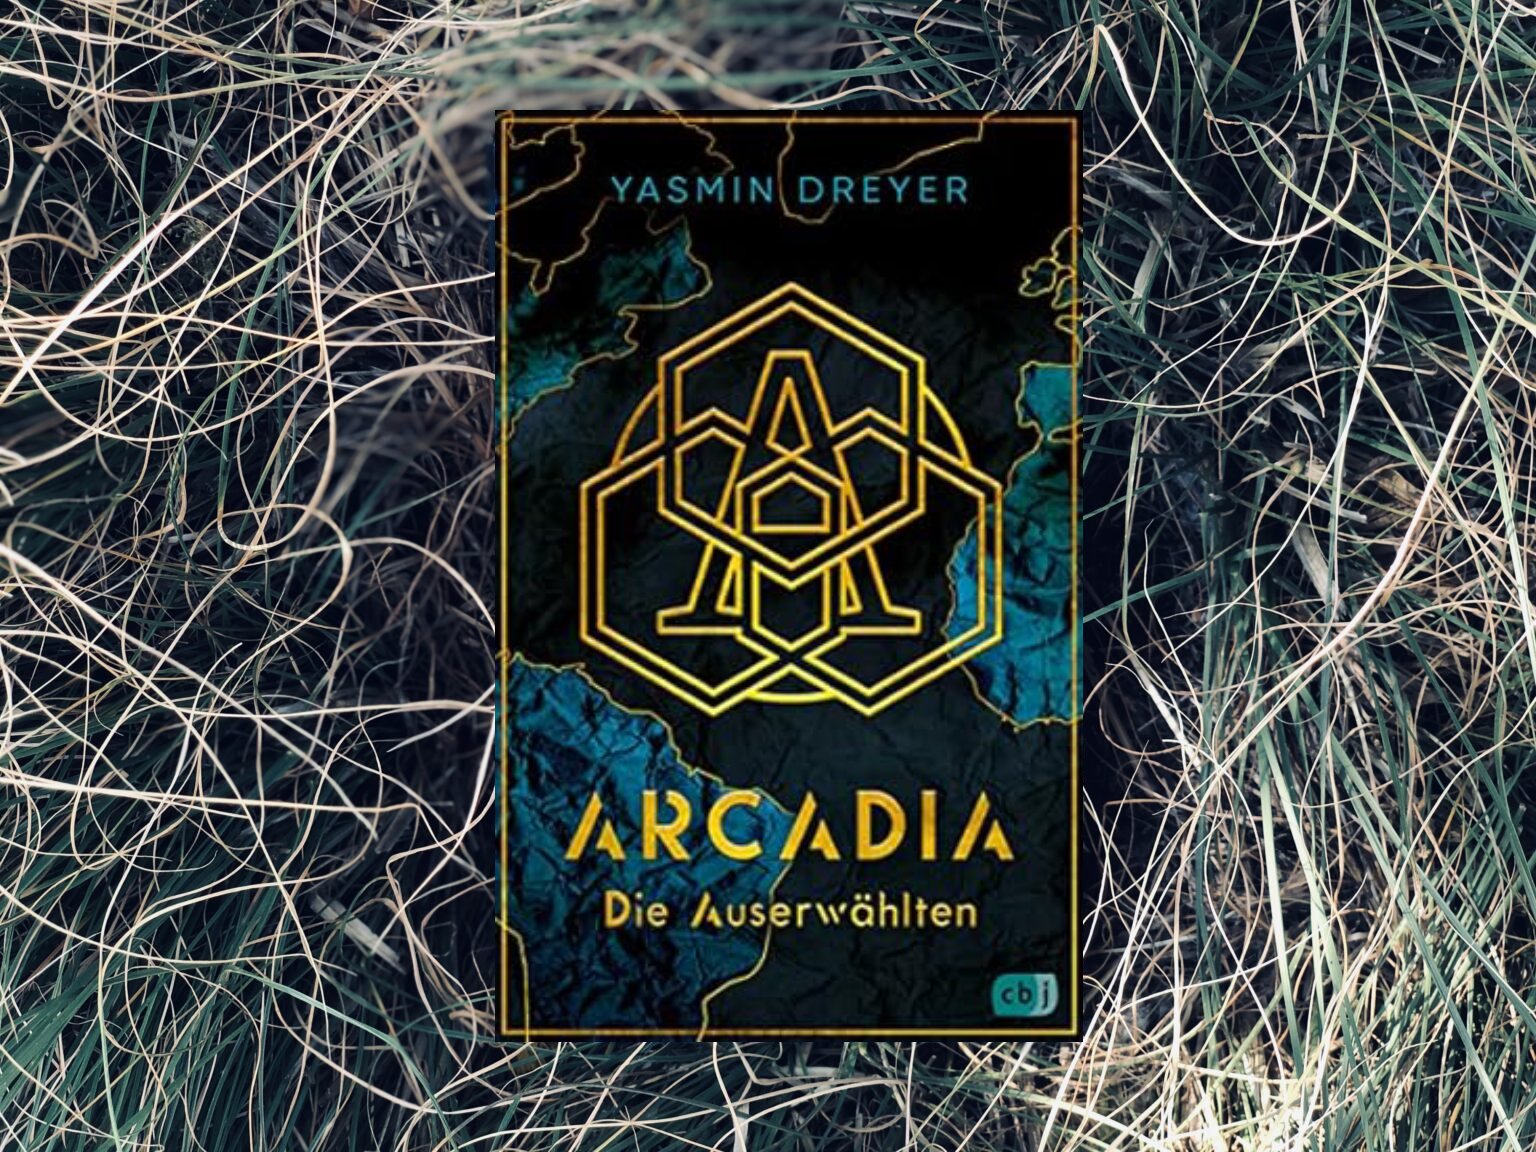 Arcadia – Die Auserwählen: Fluch oder Segen, man weiß es noch nicht